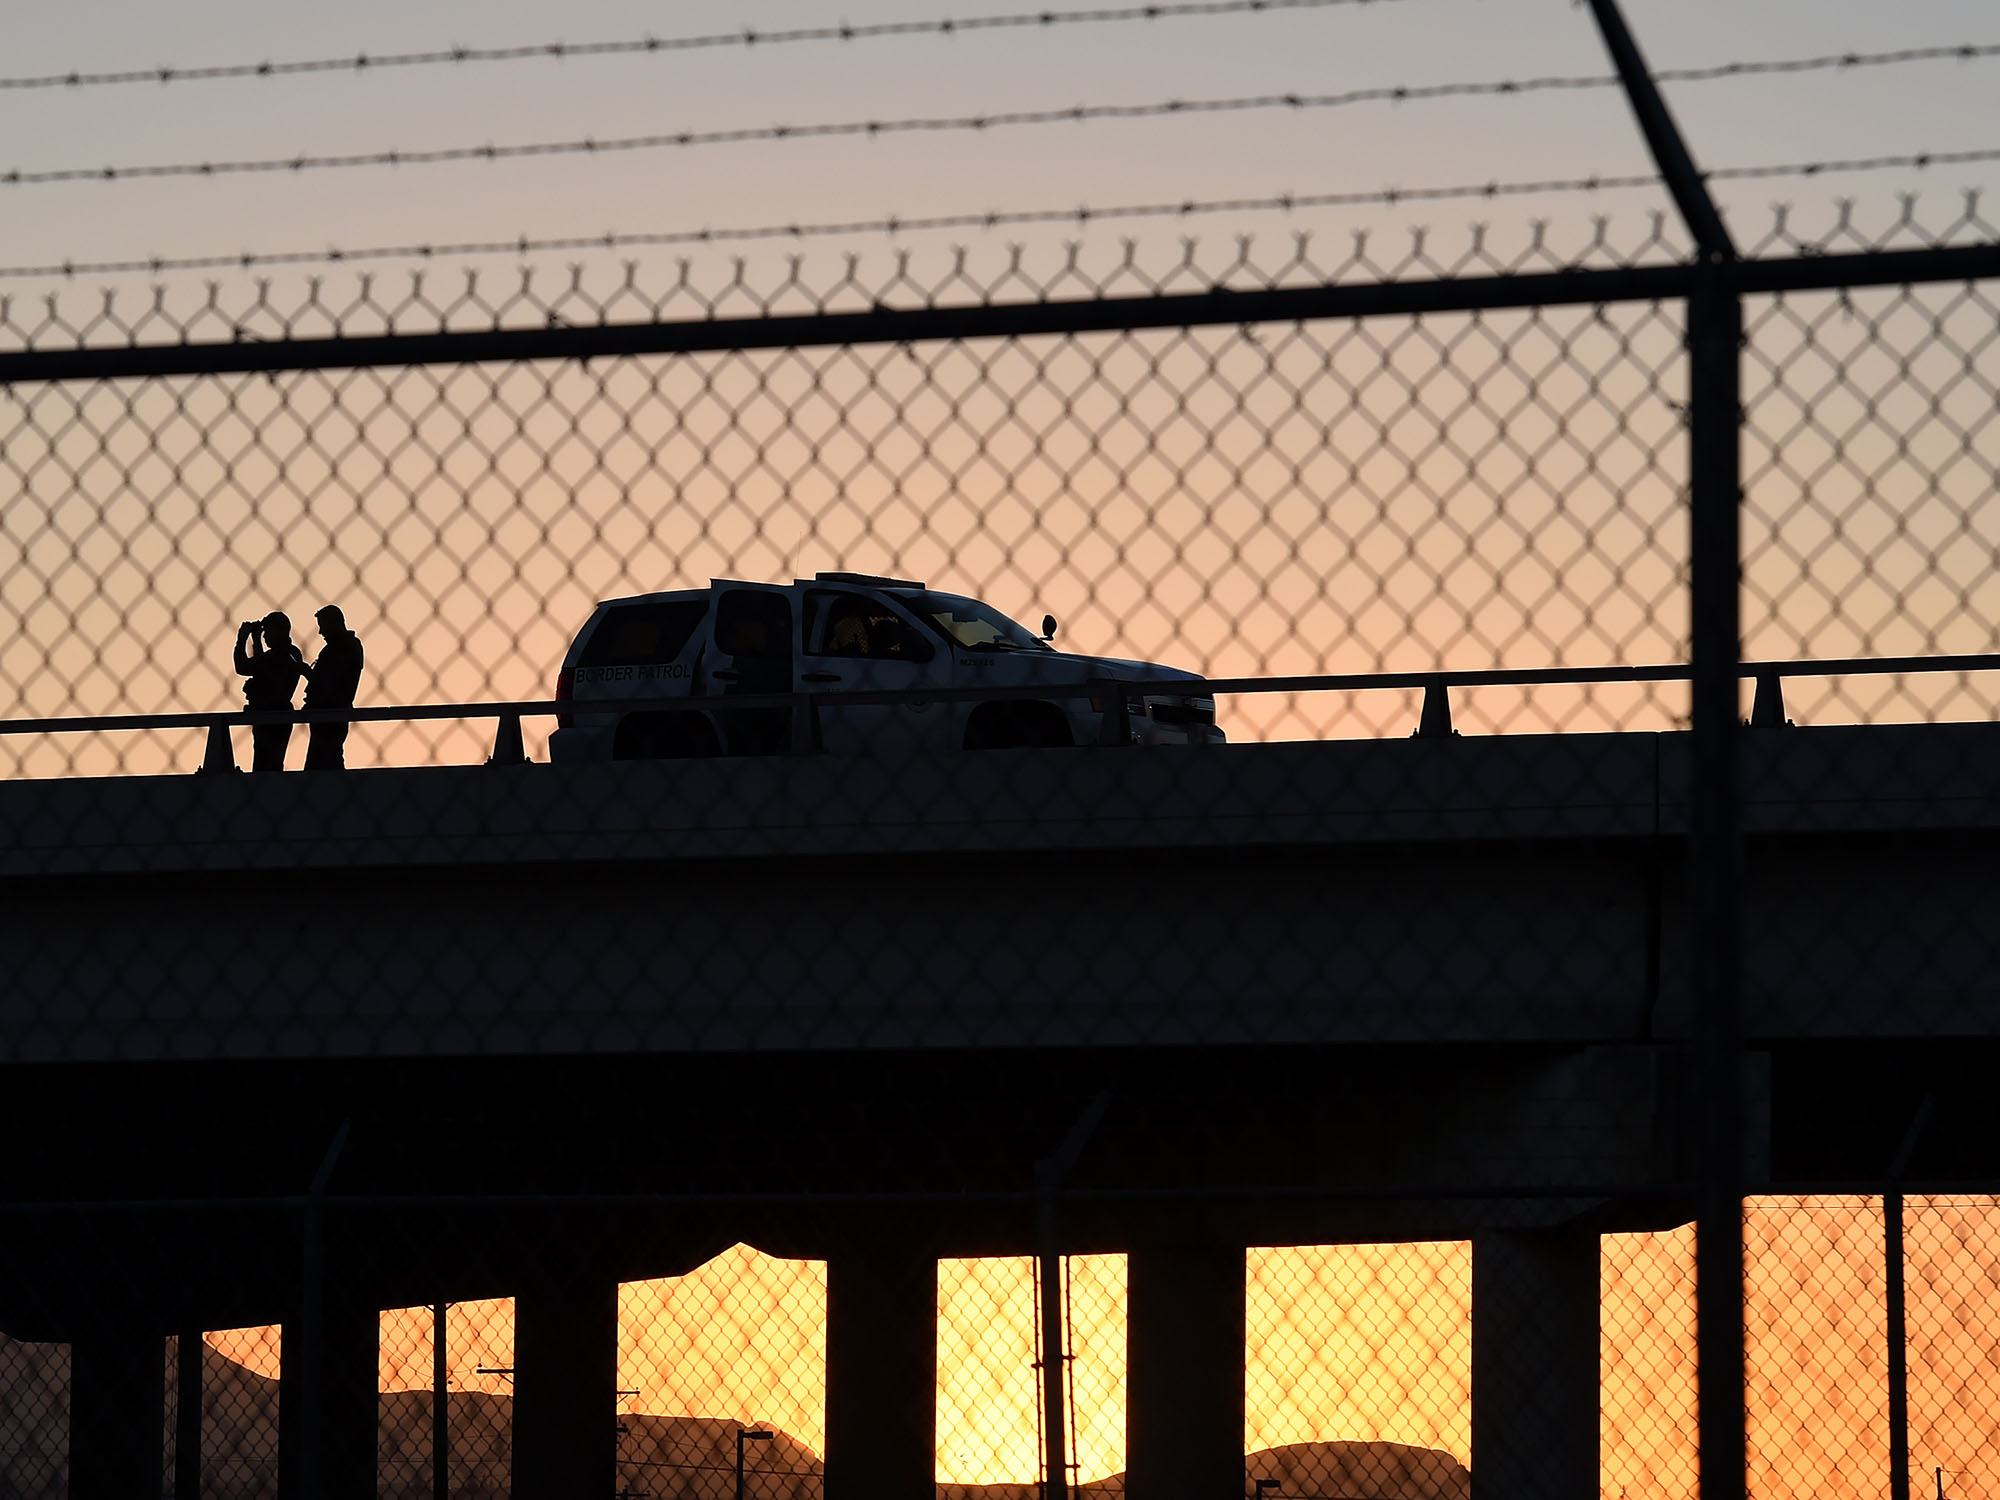 Members of the U.S. Border Patrol keep watch in El Paso, Texas.